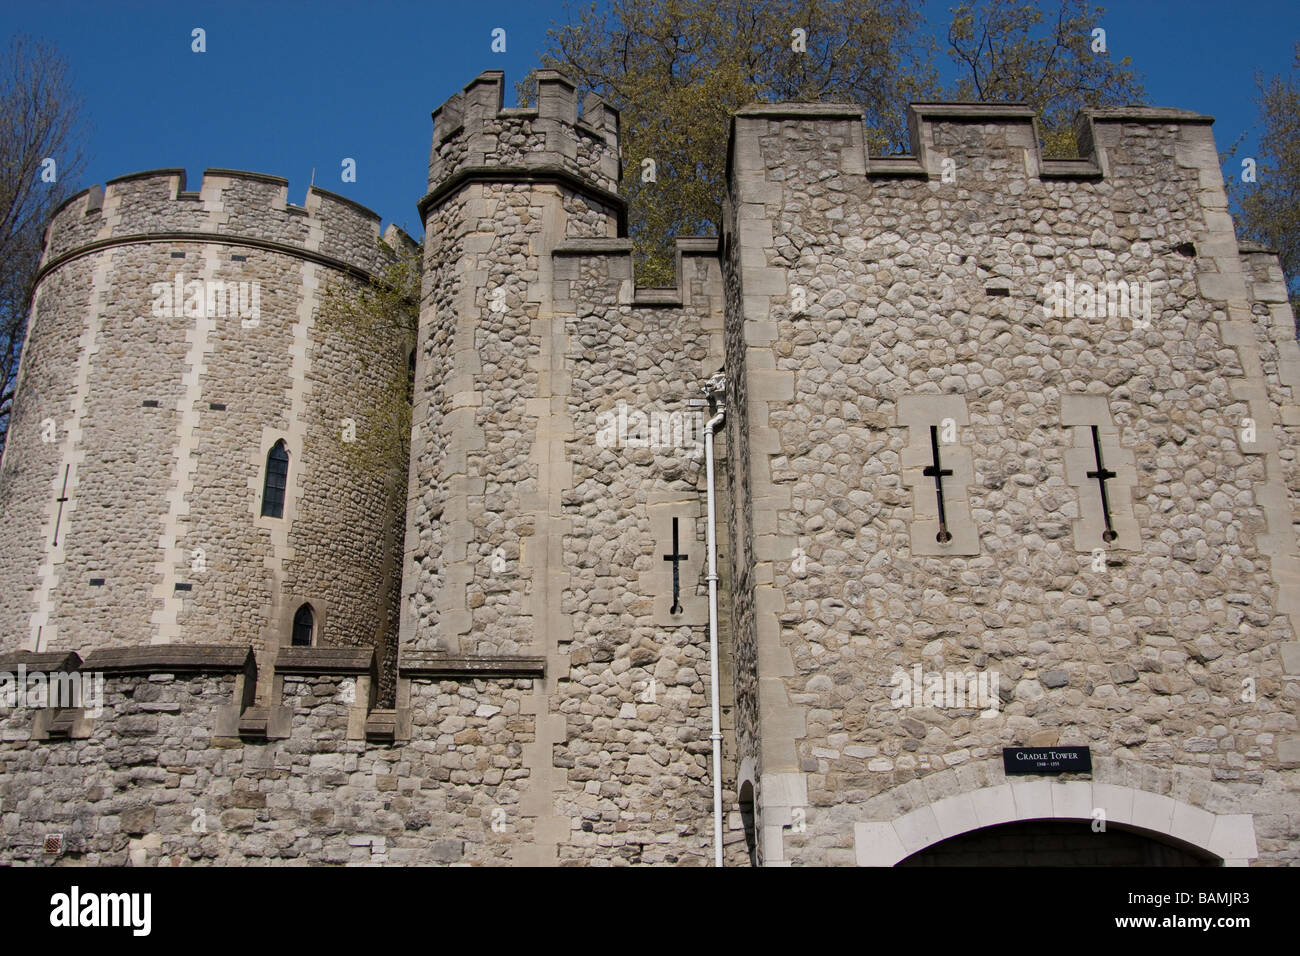 Il castello di torretta Torre di Londra thames path banca del nord fiume Tamigi Londra Foto Stock